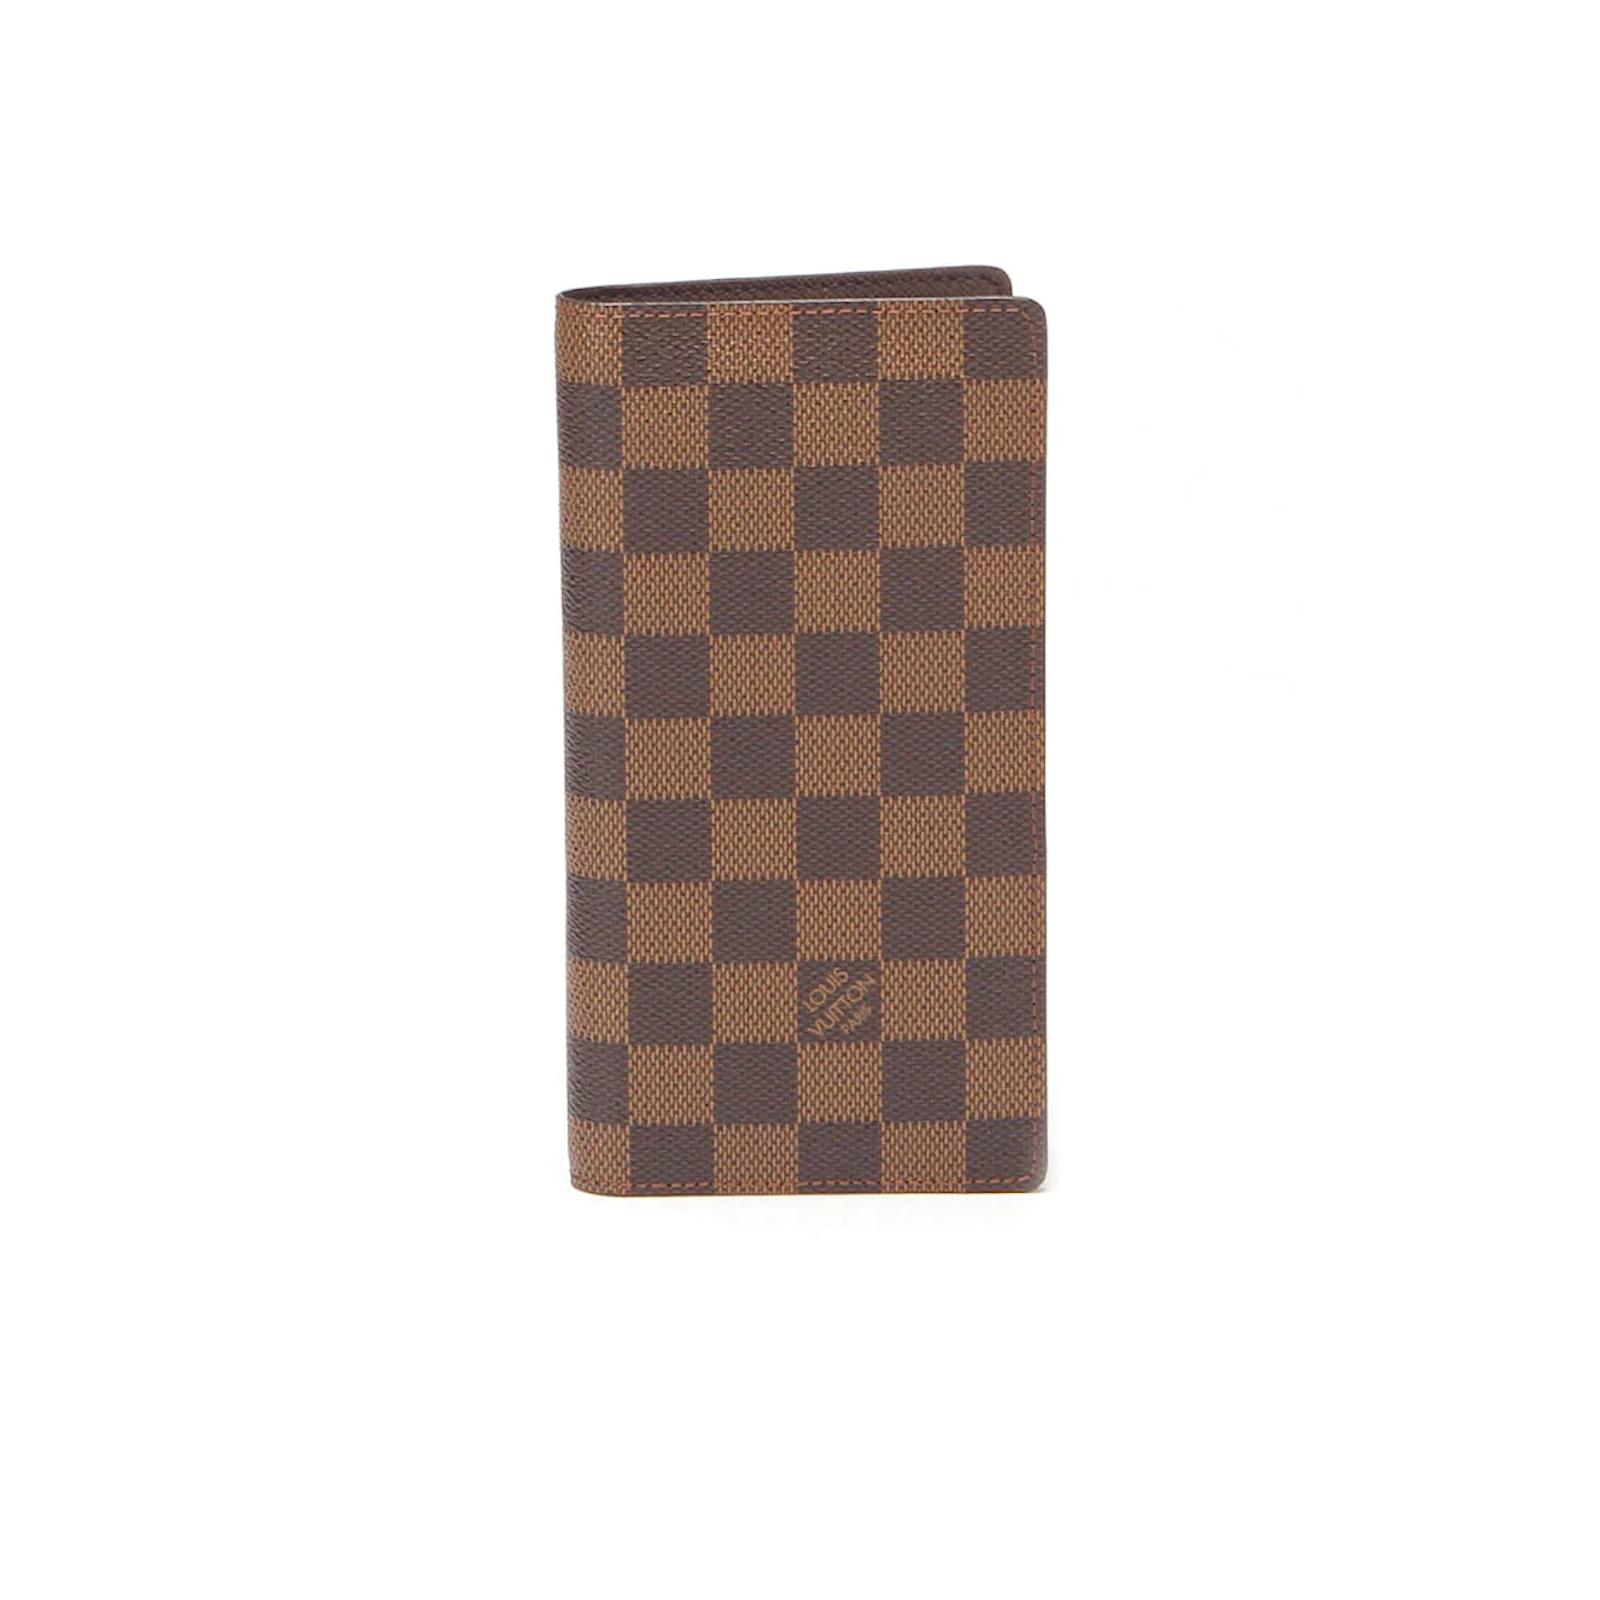 Louis Vuitton brazza wallet M66540